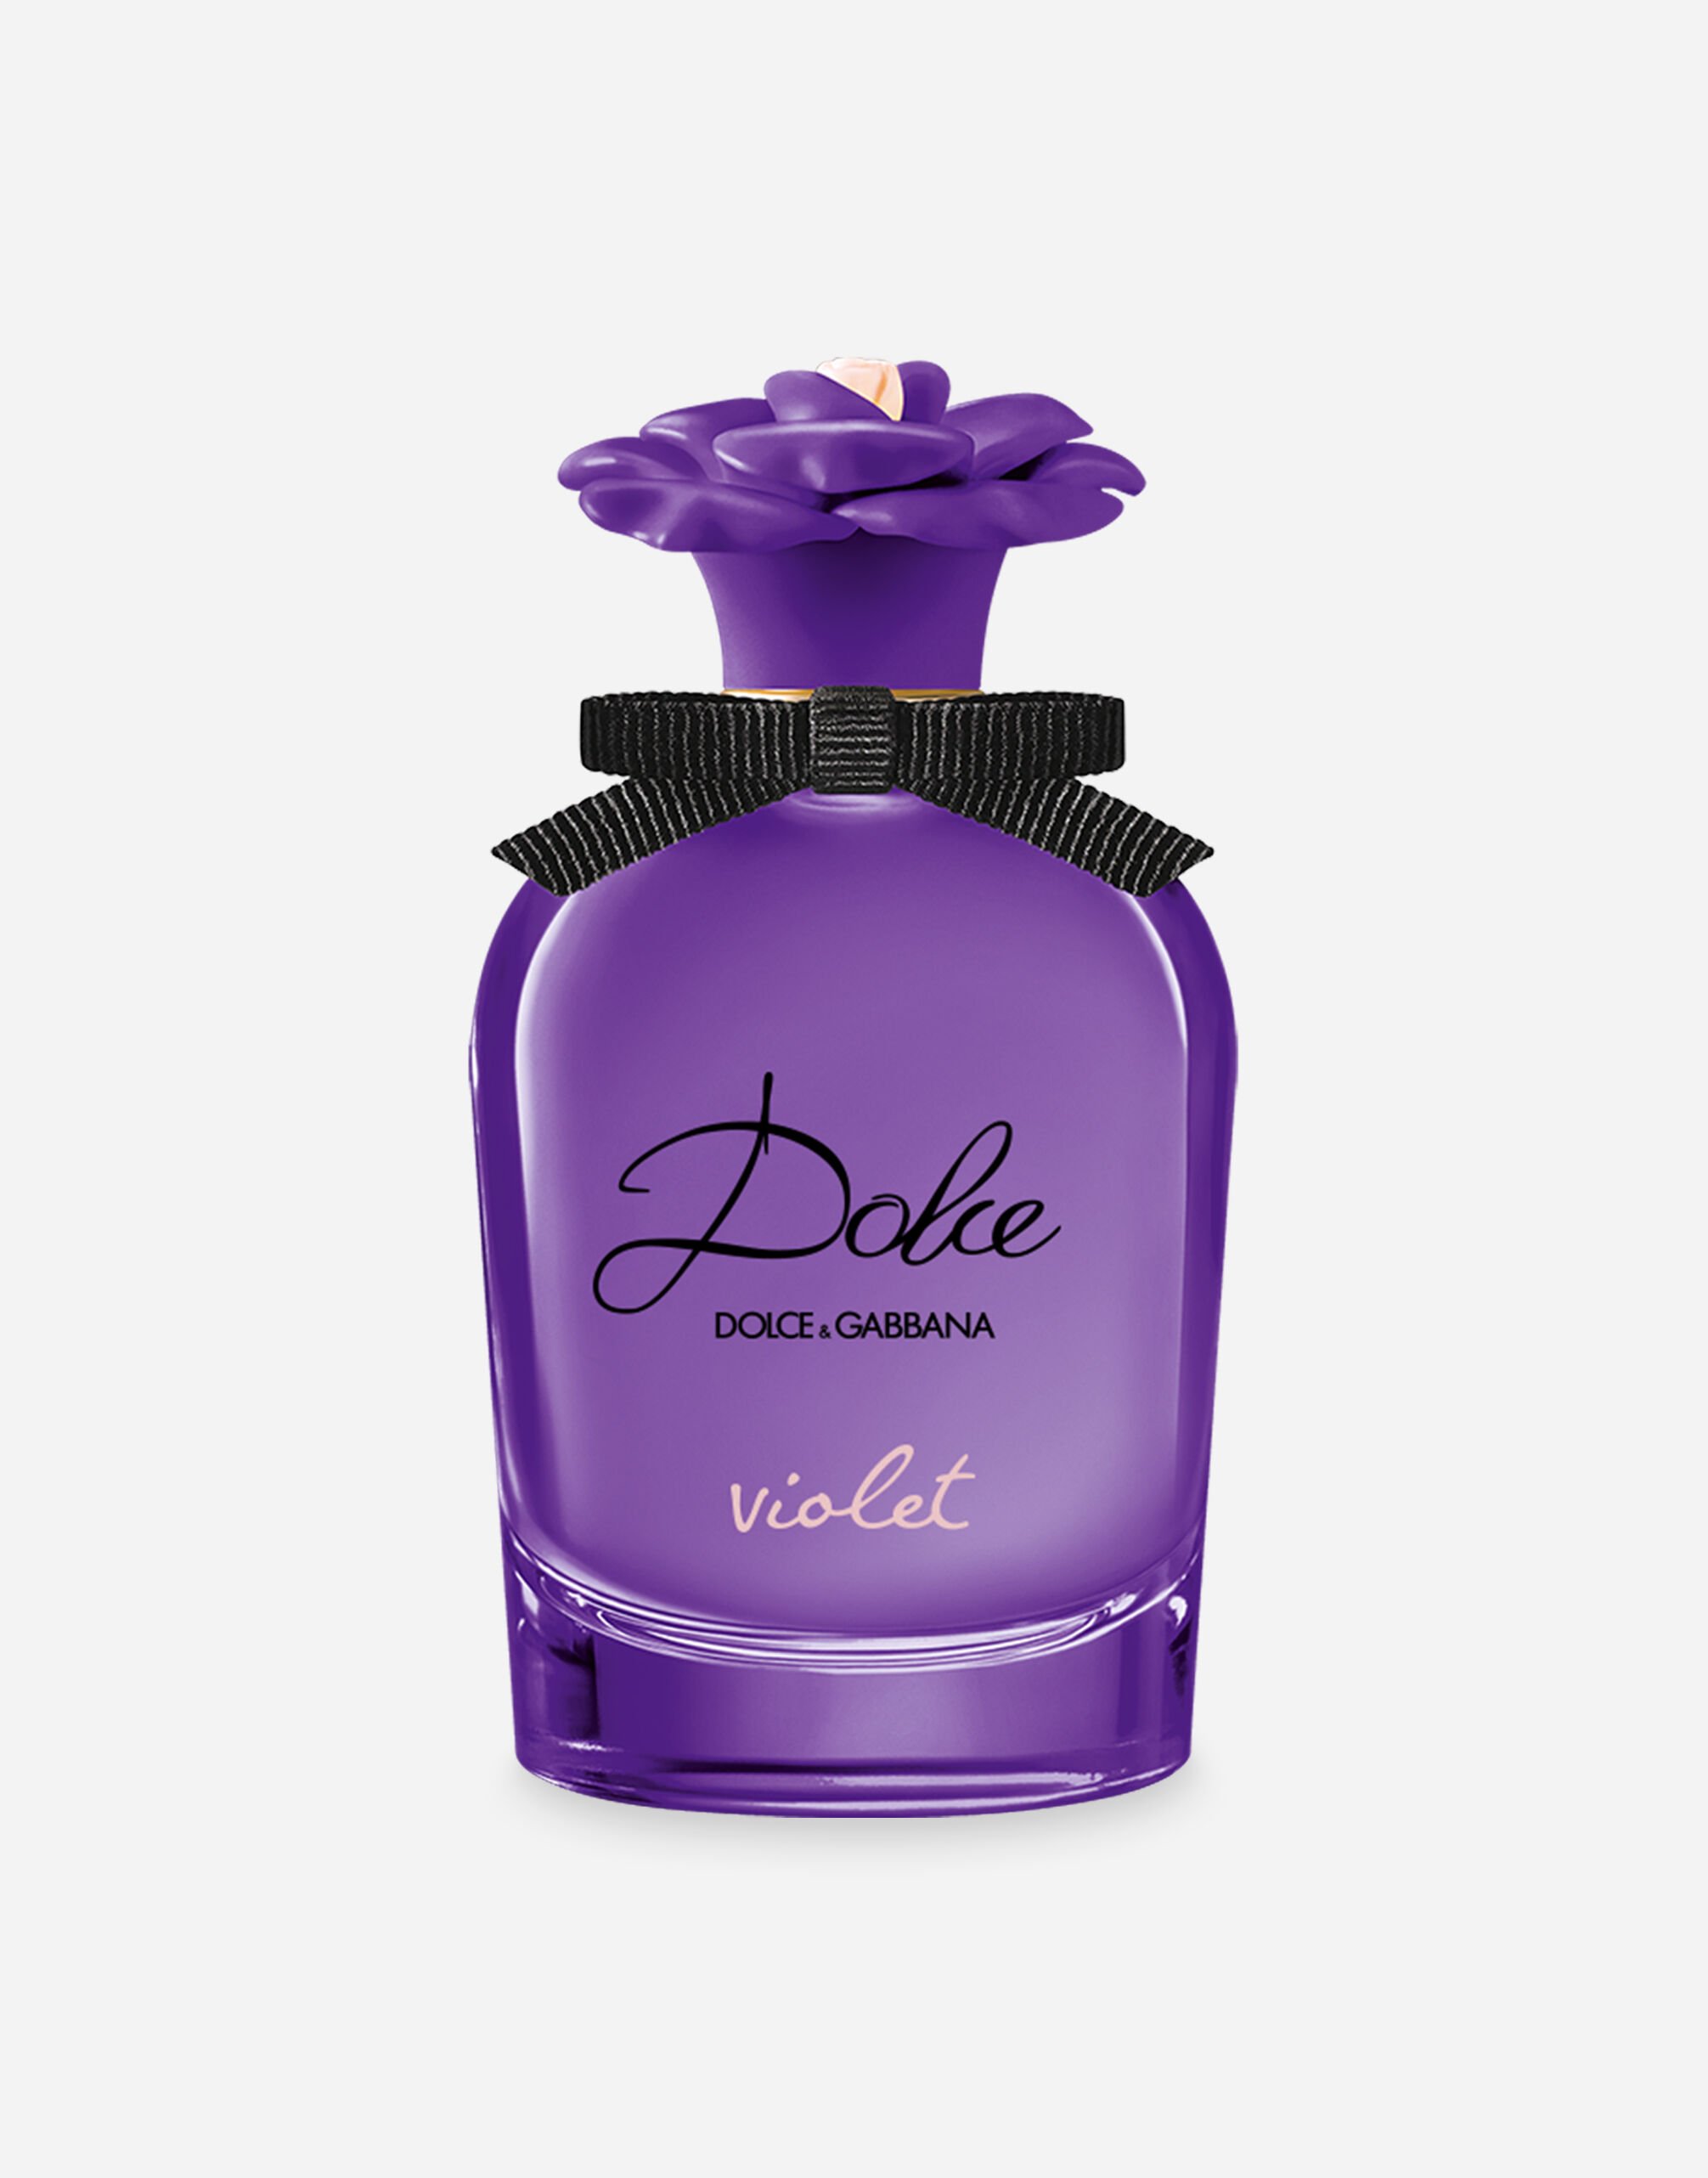 Dolce & Gabbana Dolce Violet Eau de Toilette - VP003BVP000